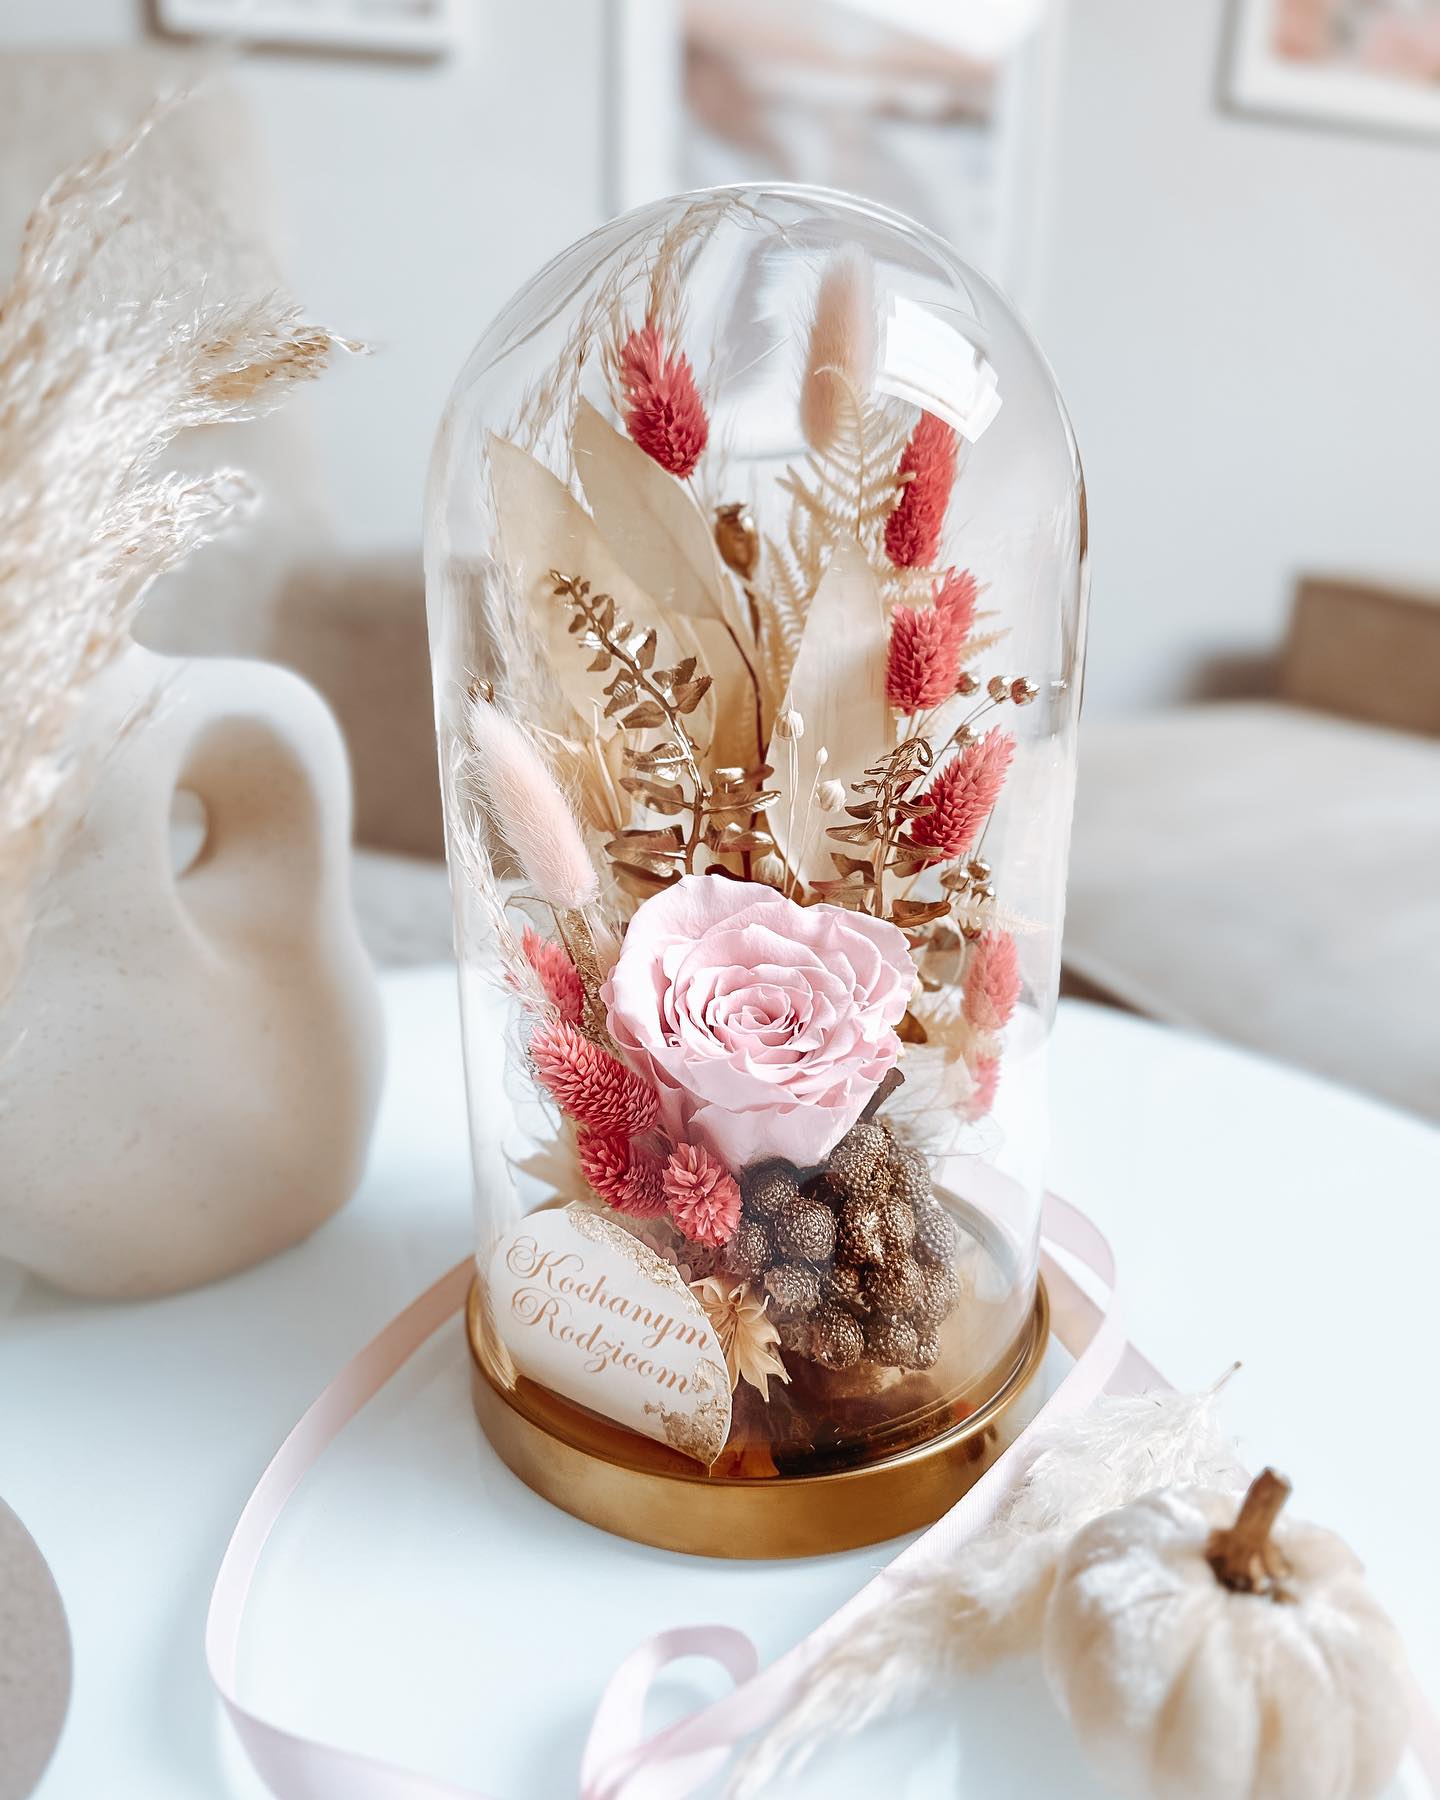 Szklana kopuła z wieczną róża jesienna  (PREMIUM) Wersja limitowana zdjęcie 1